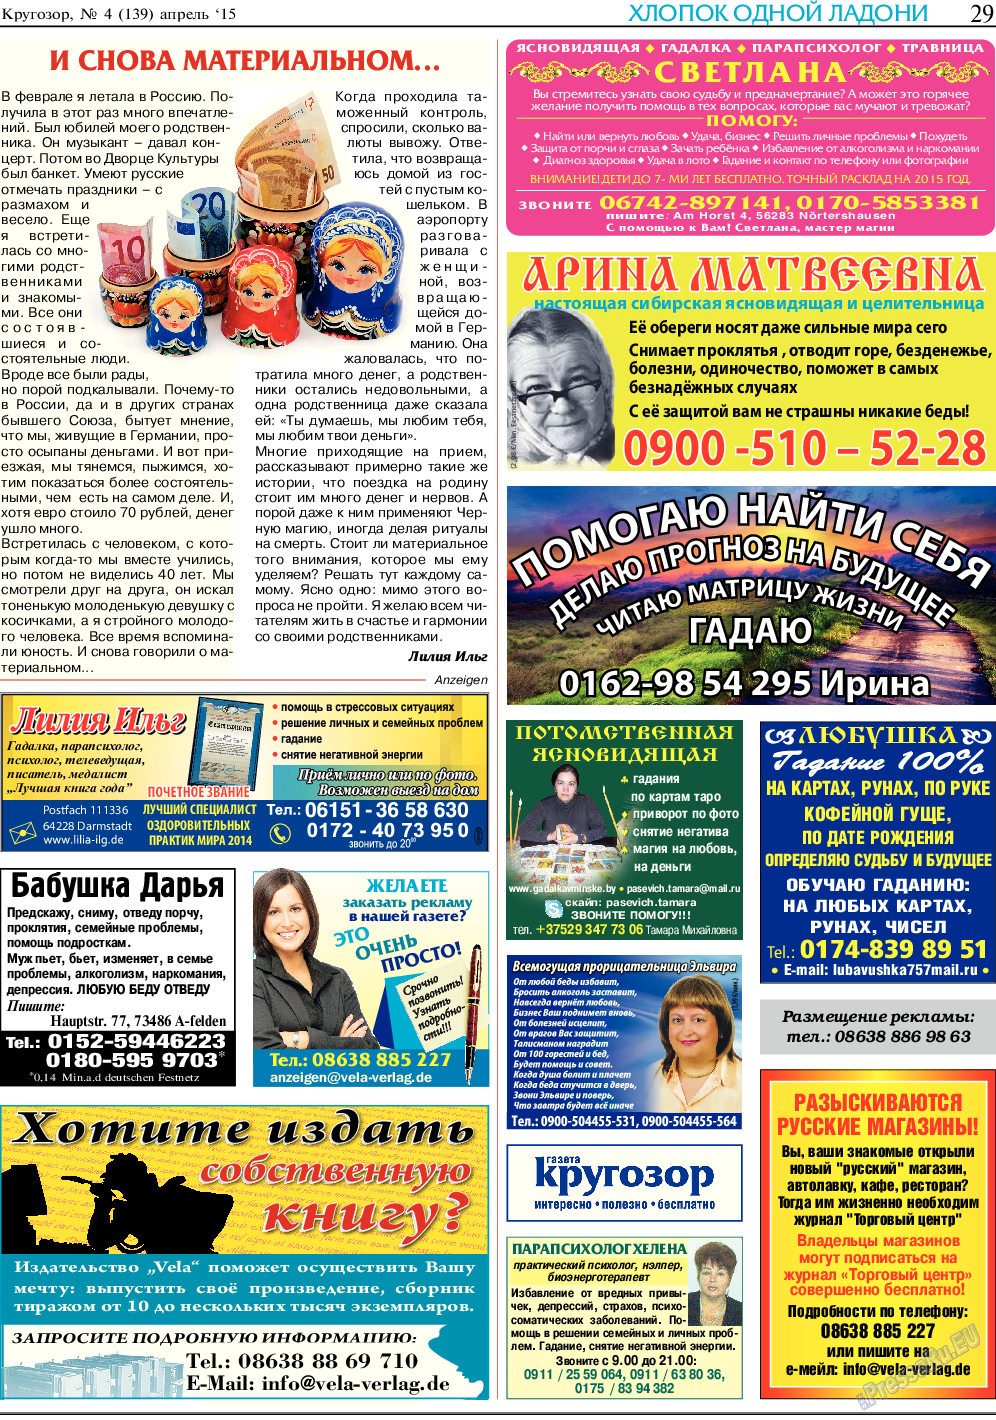 Кругозор (газета). 2015 год, номер 4, стр. 29